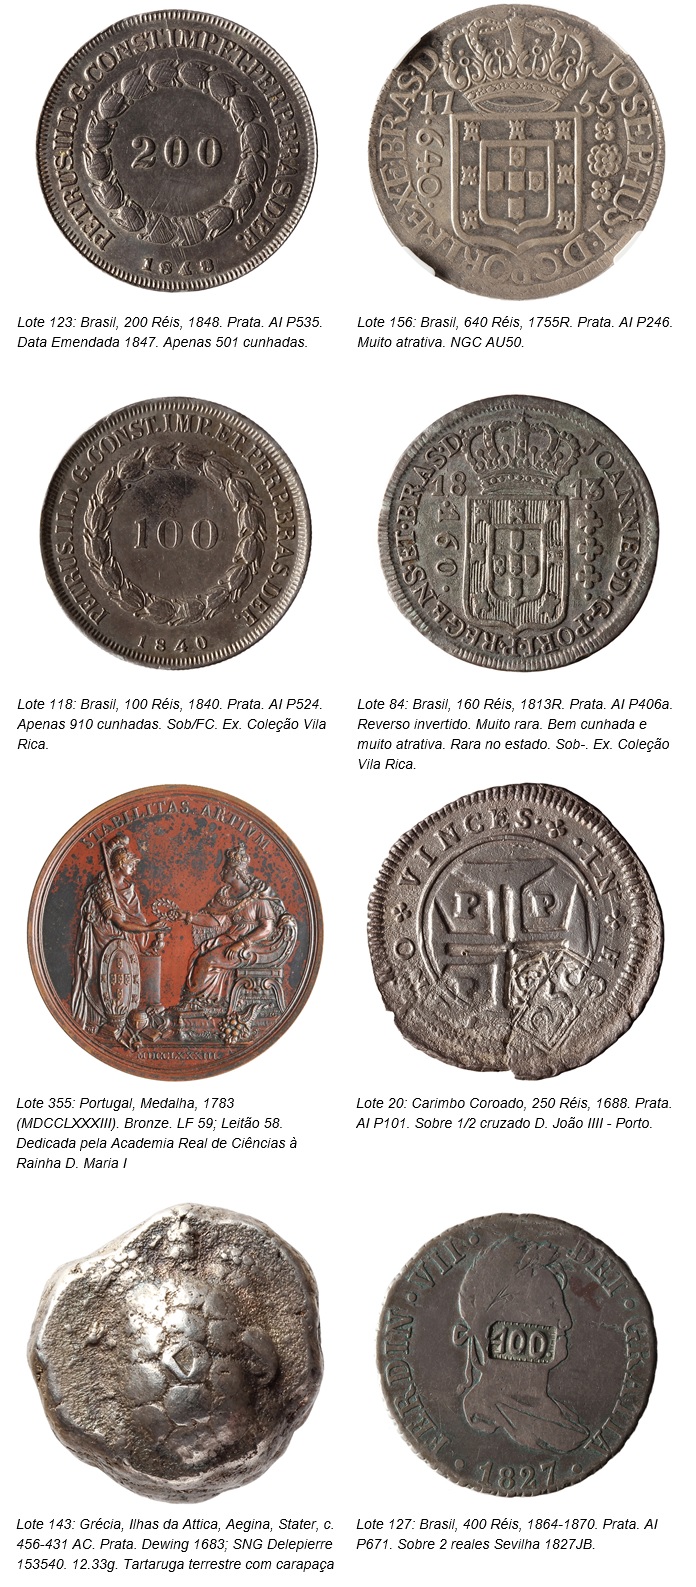 Δημοπρασίες Flávia Cardoso Soares: 7º Δημοπρασία νομισμάτων Vila Rica - Μέρος συλλογής Vila Rica 2, Προτεινόμενα. Αποκάλυψη.